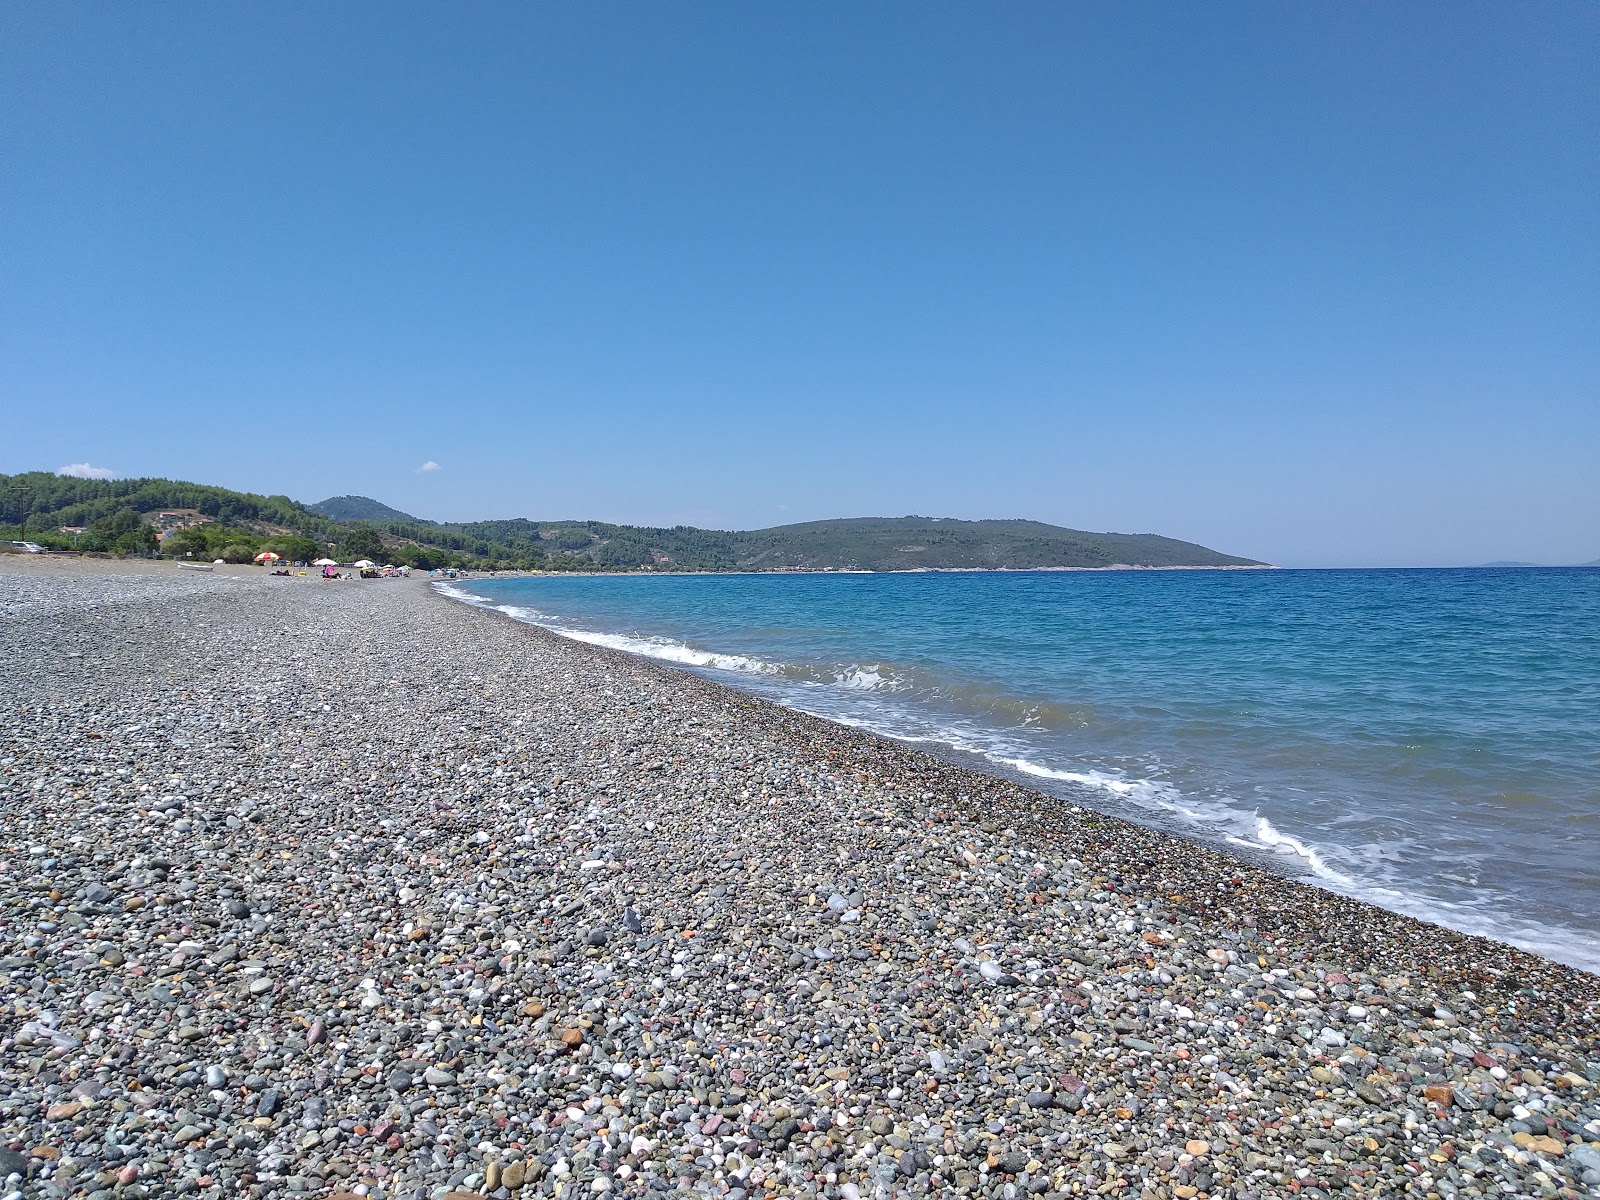 Elinika beach'in fotoğrafı gri çakıl taşı yüzey ile